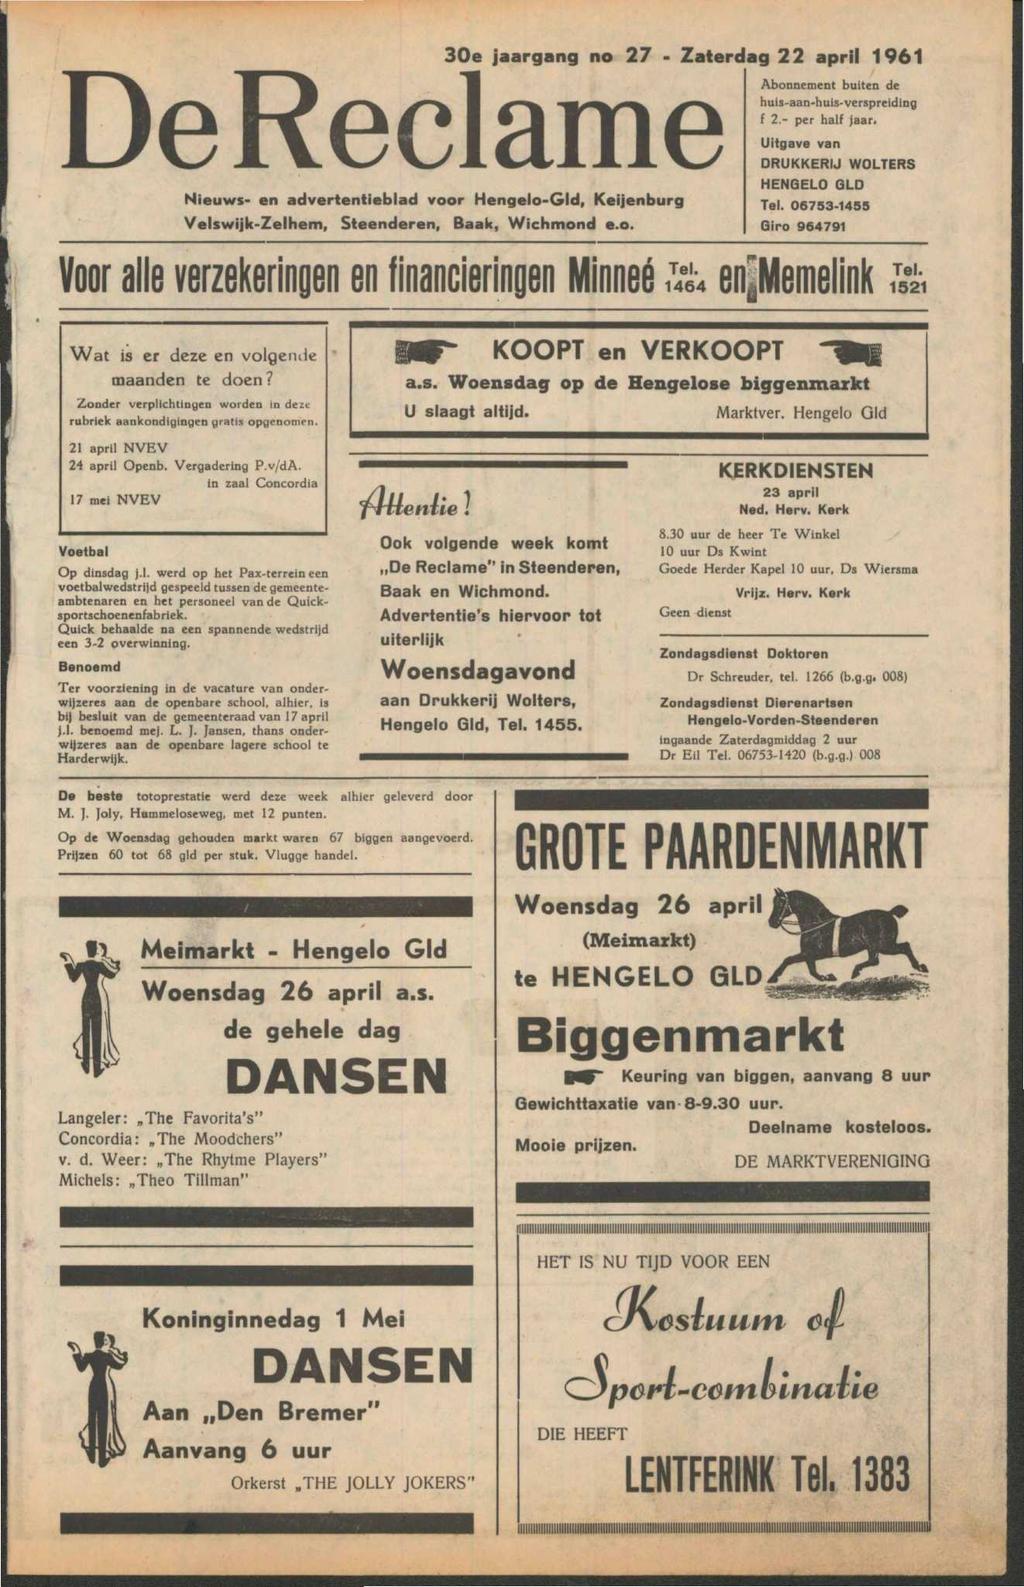 Nieuws- en advertentieblad voor Hengelo-Gld, Keijenburg Velswijk-Zelhem, Steenderen, Baak, Wichmond e.o. 30e jaargang no 27 - Zaterdag 22 april 1961 Abonnement buiten de huis-aan-huis-verspreiding f 2.